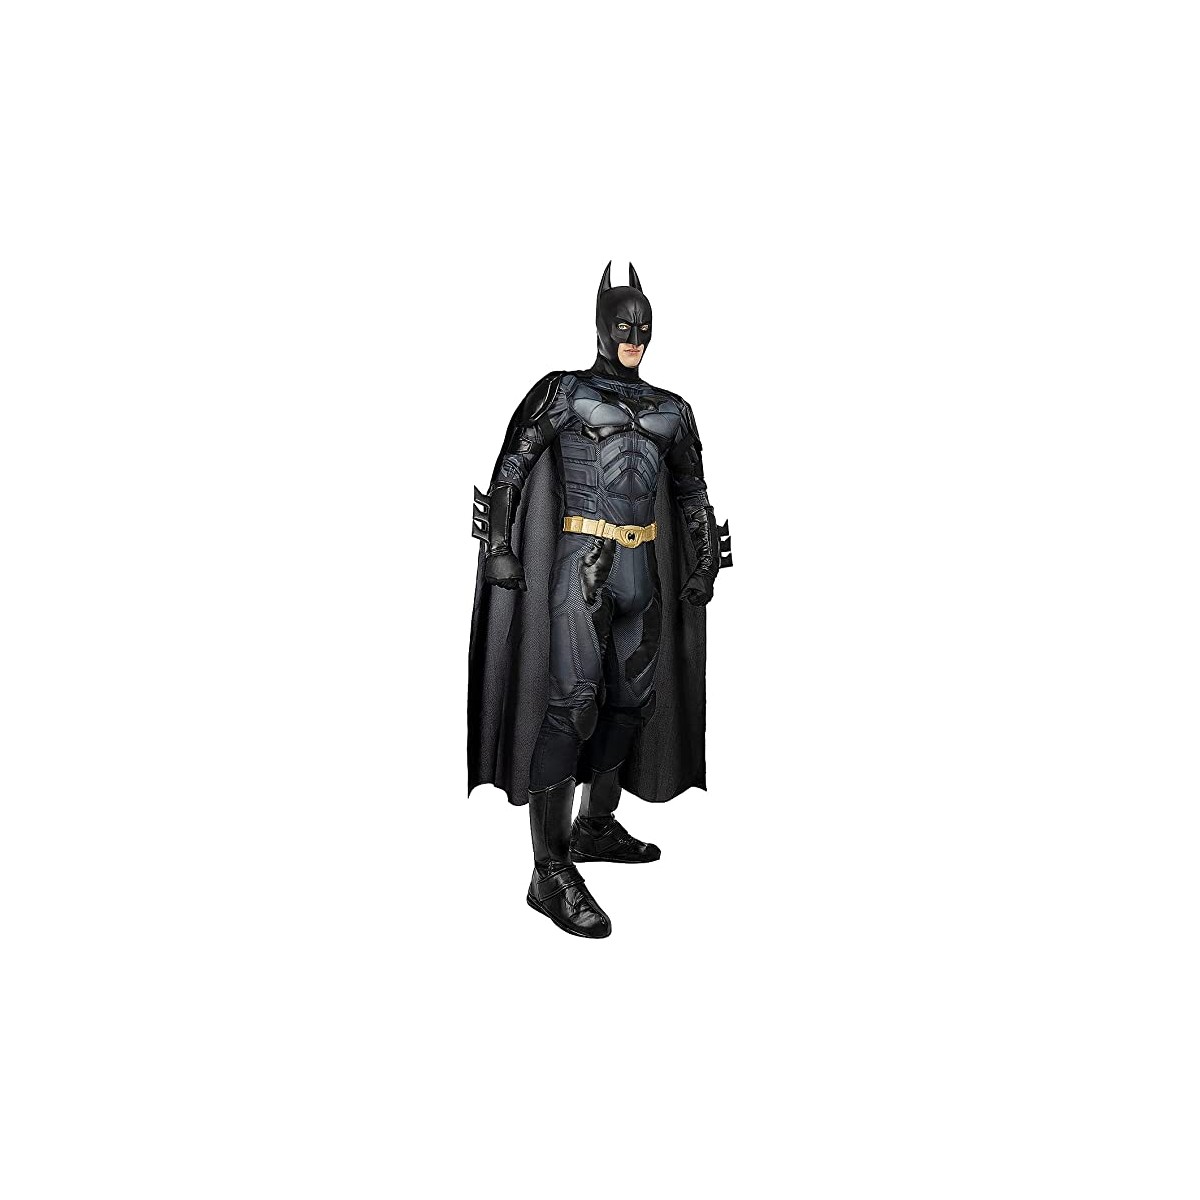 Costume Batman Il Cavaliere Oscuro, per adulti